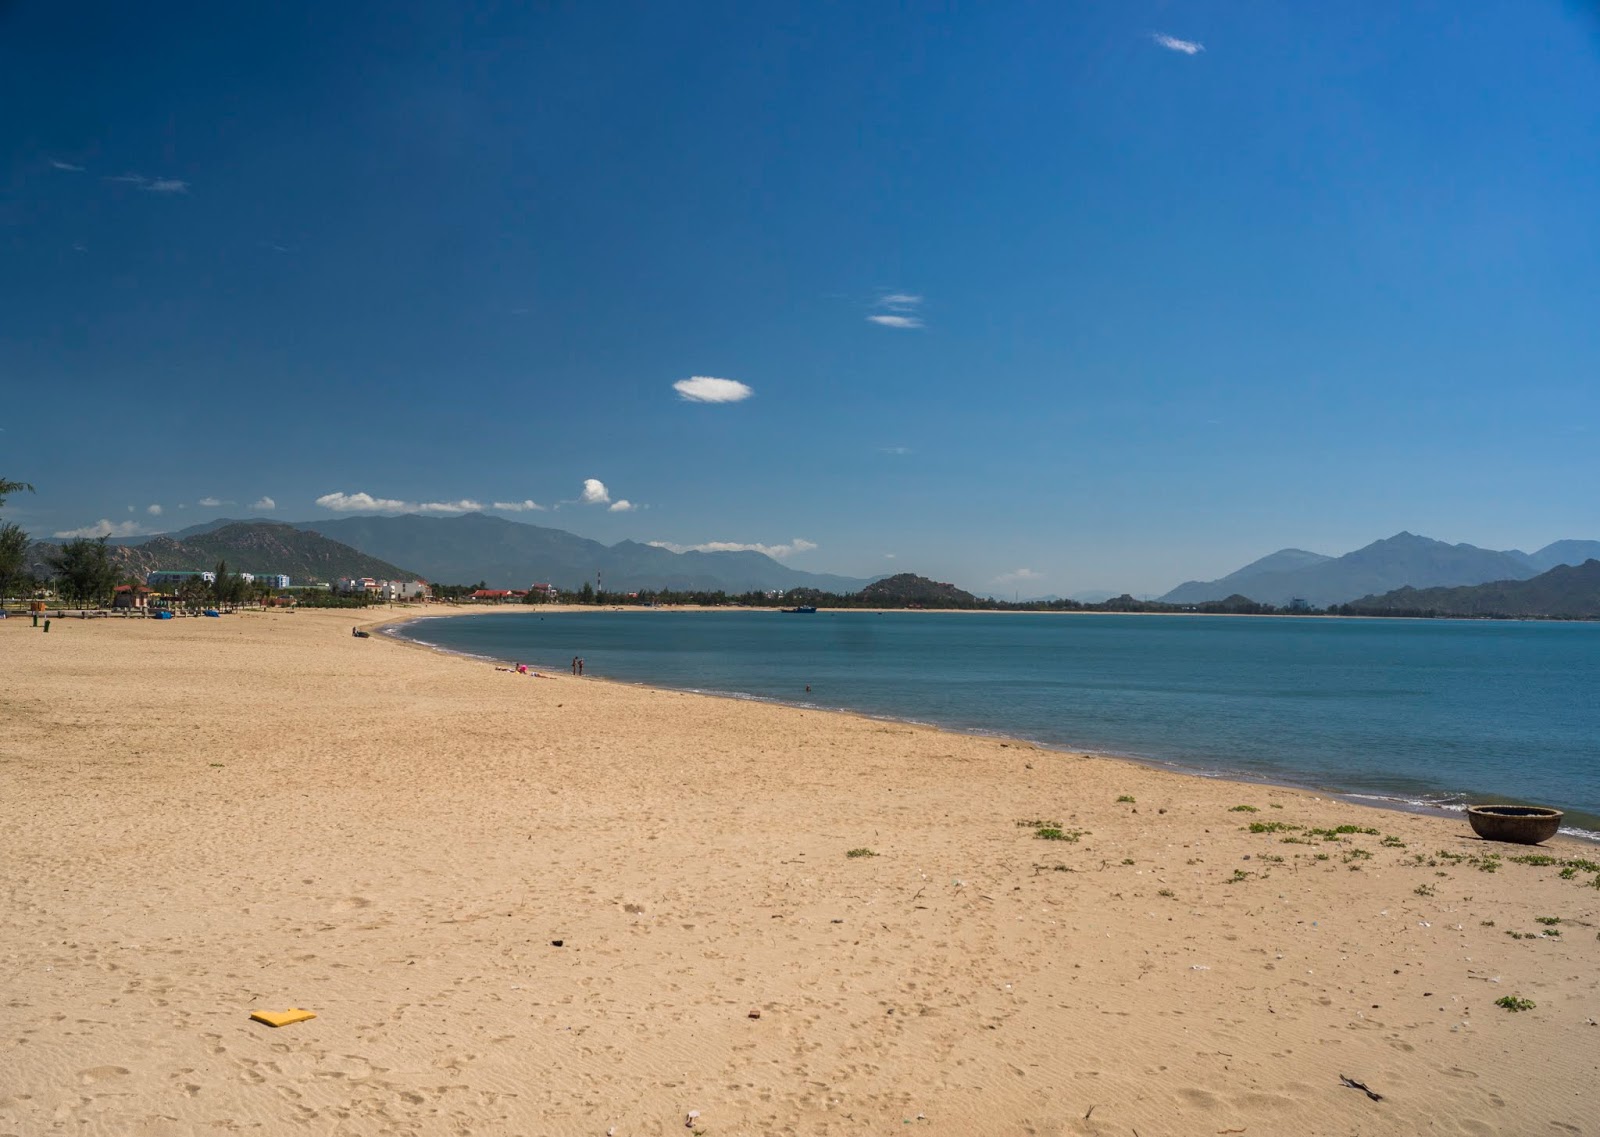 Zdjęcie Phan Rang Beach z powierzchnią jasny piasek